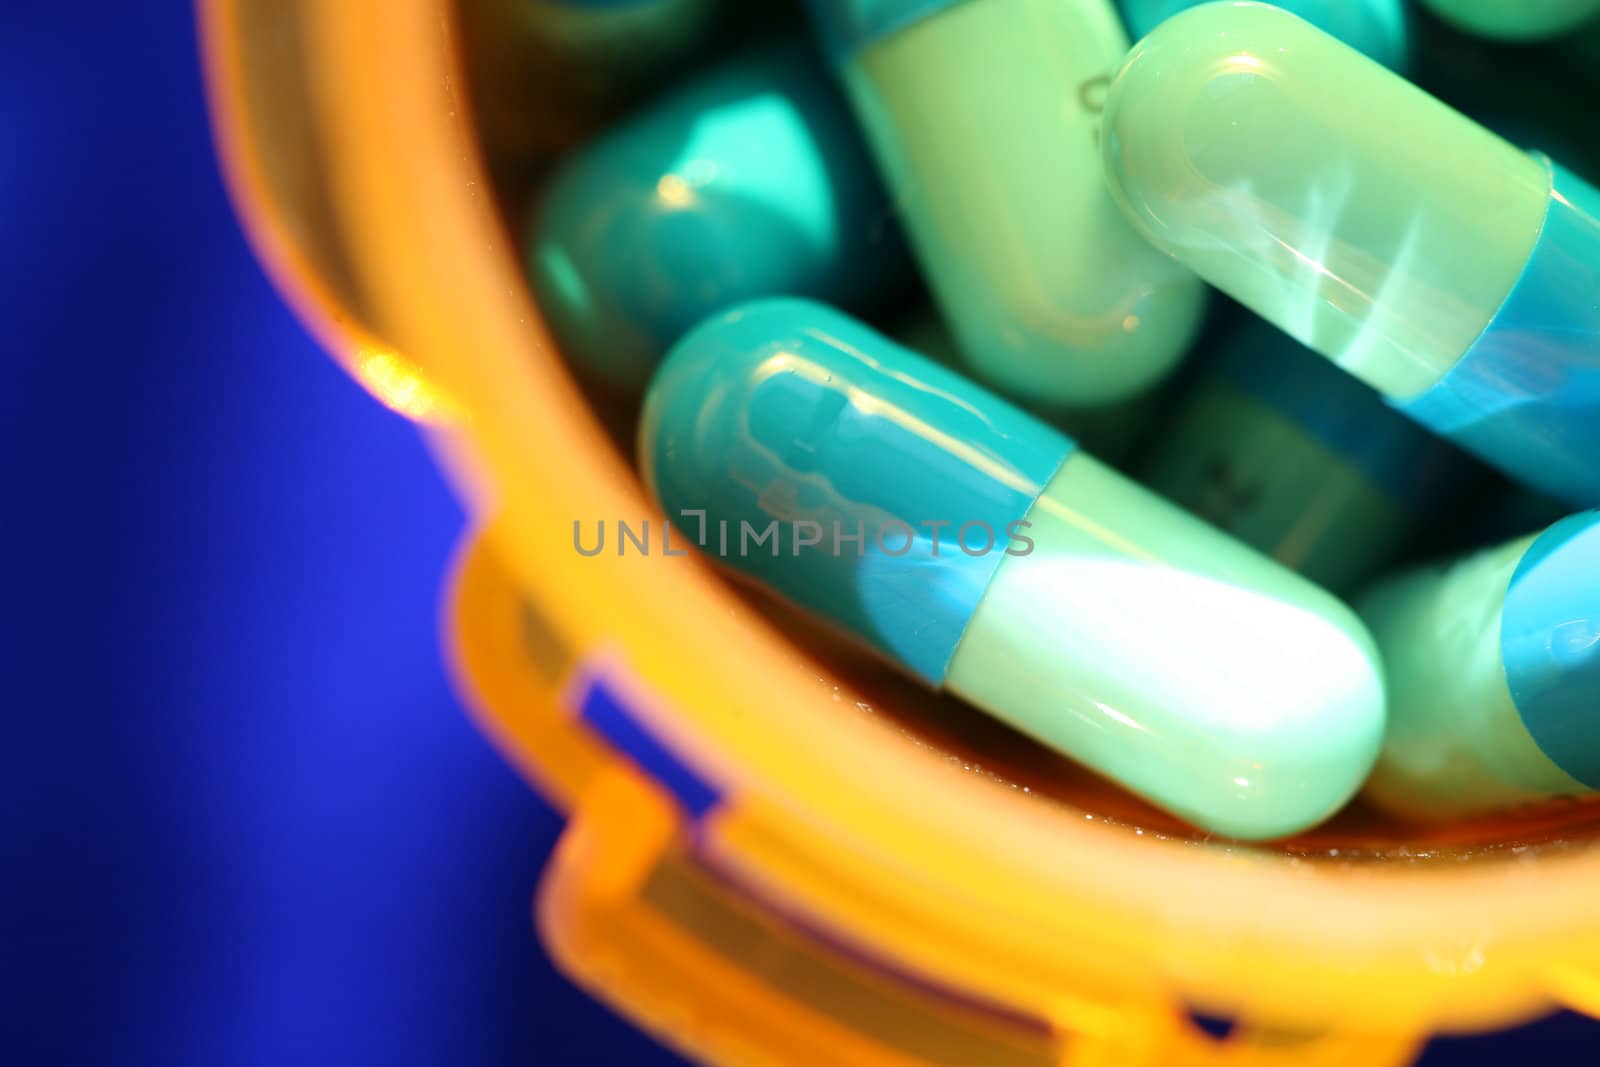 Medicine, pills against blue background by jarenwicklund